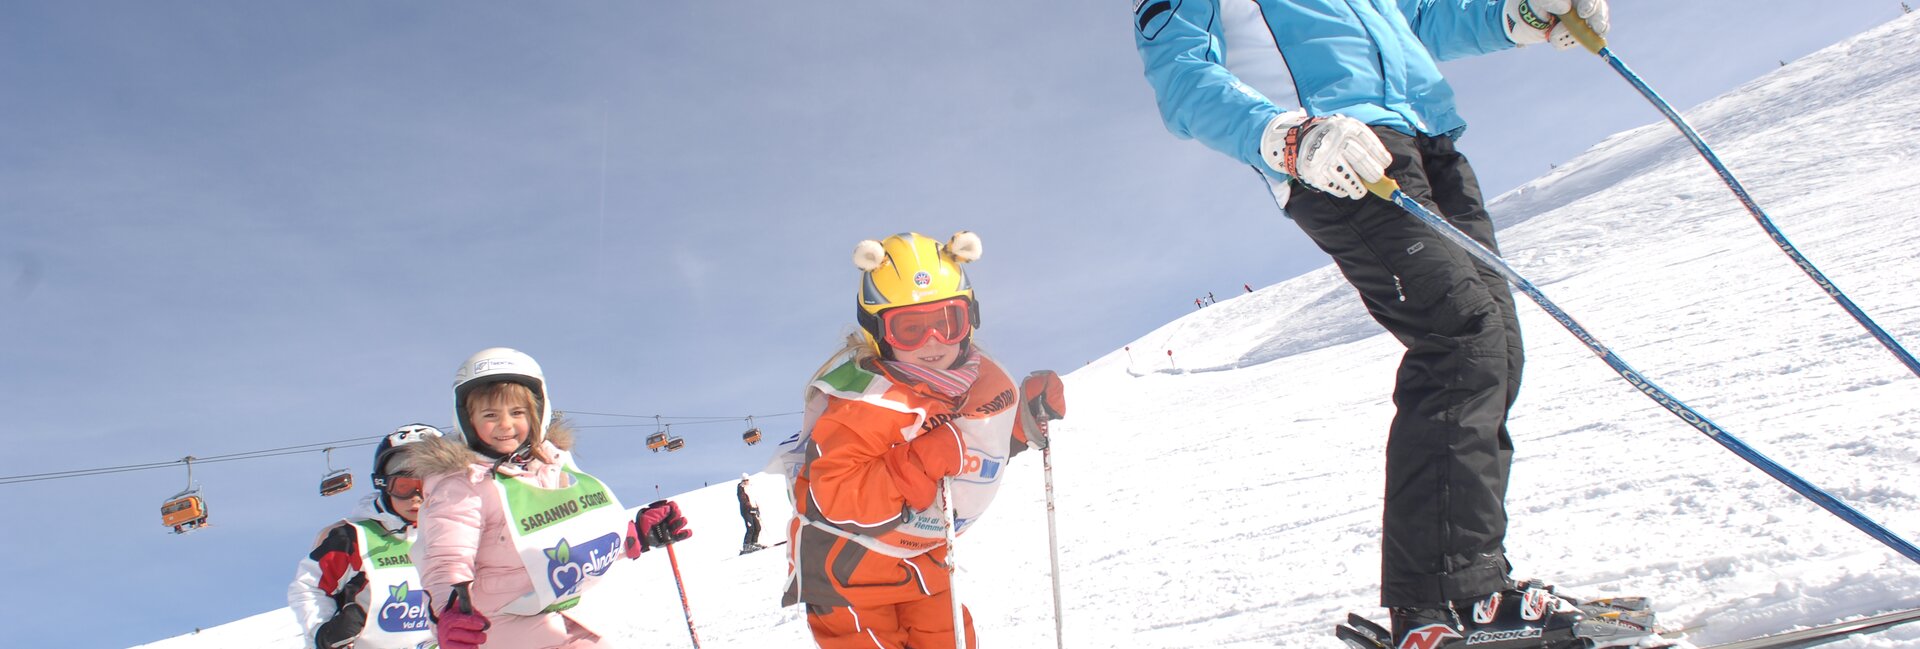 Imparare a sciare divertendosi, in Val di Fassa